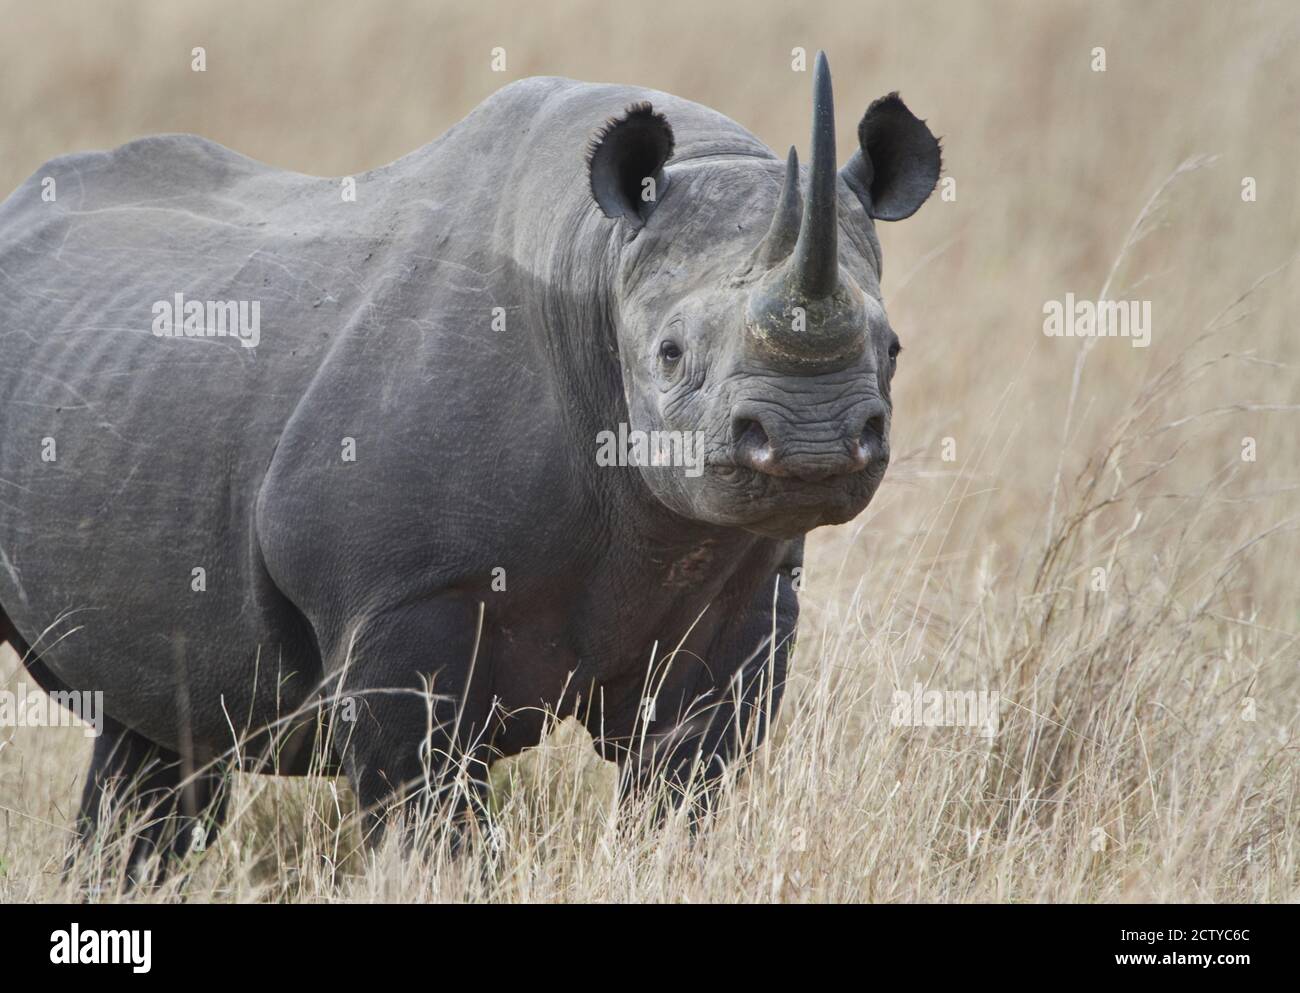 Black rhinoceros (Diceros bicornis) in a field, Kenya Stock Photo